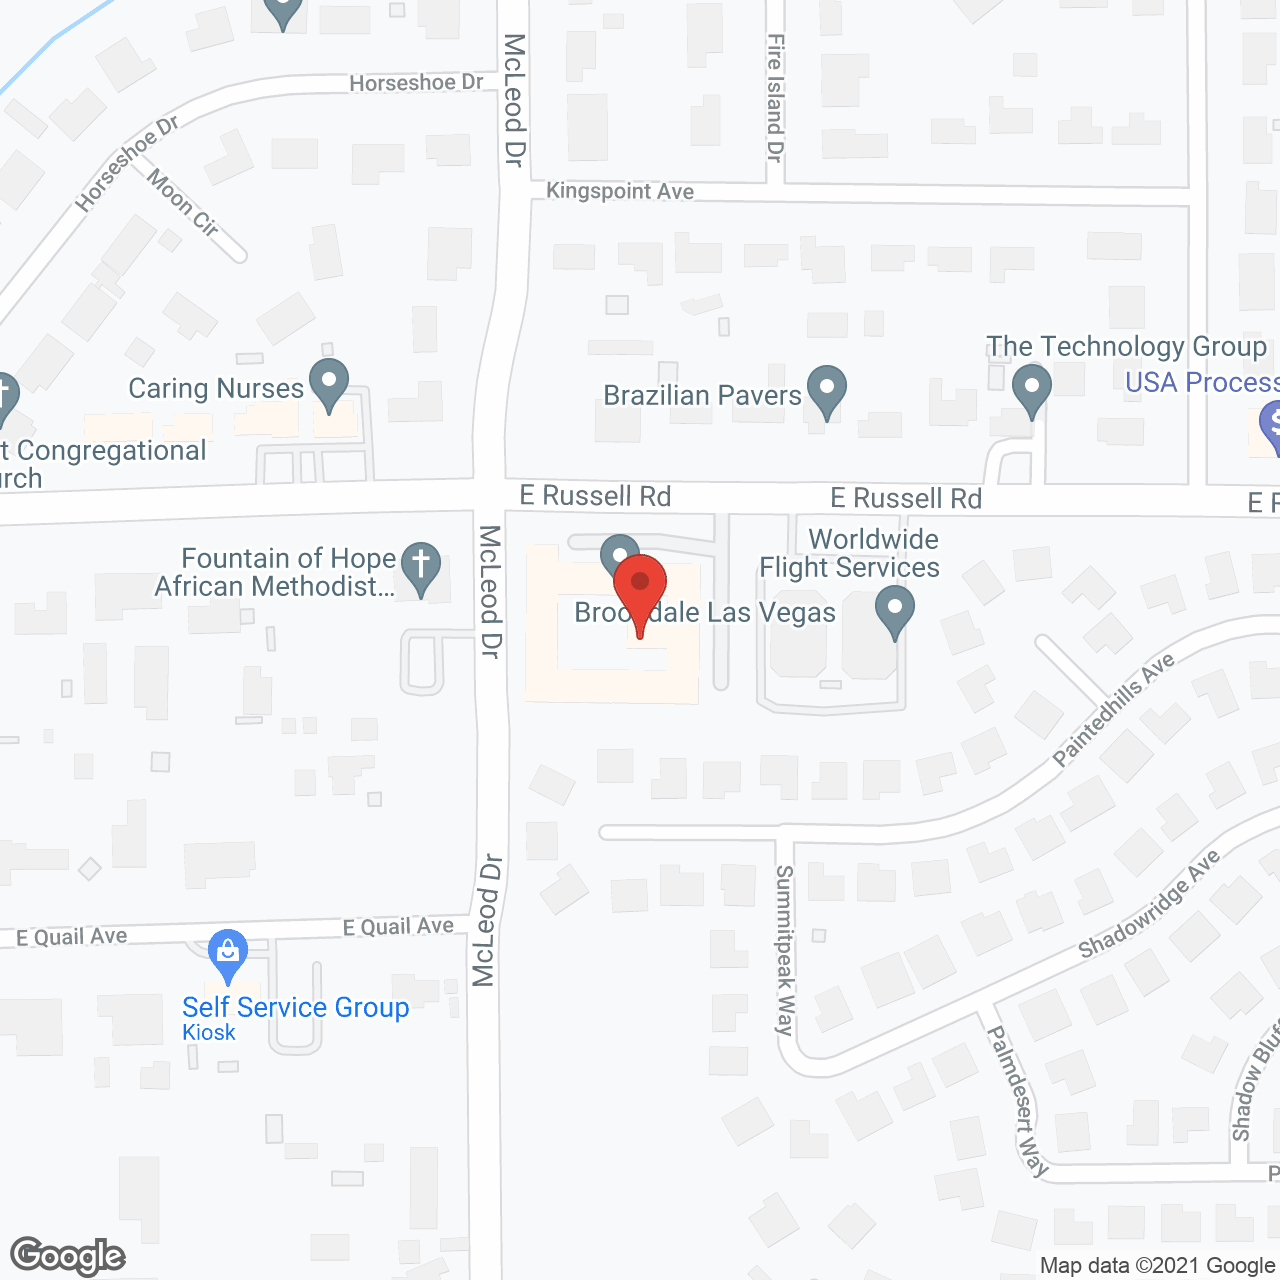 Brookdale Las Vegas in google map